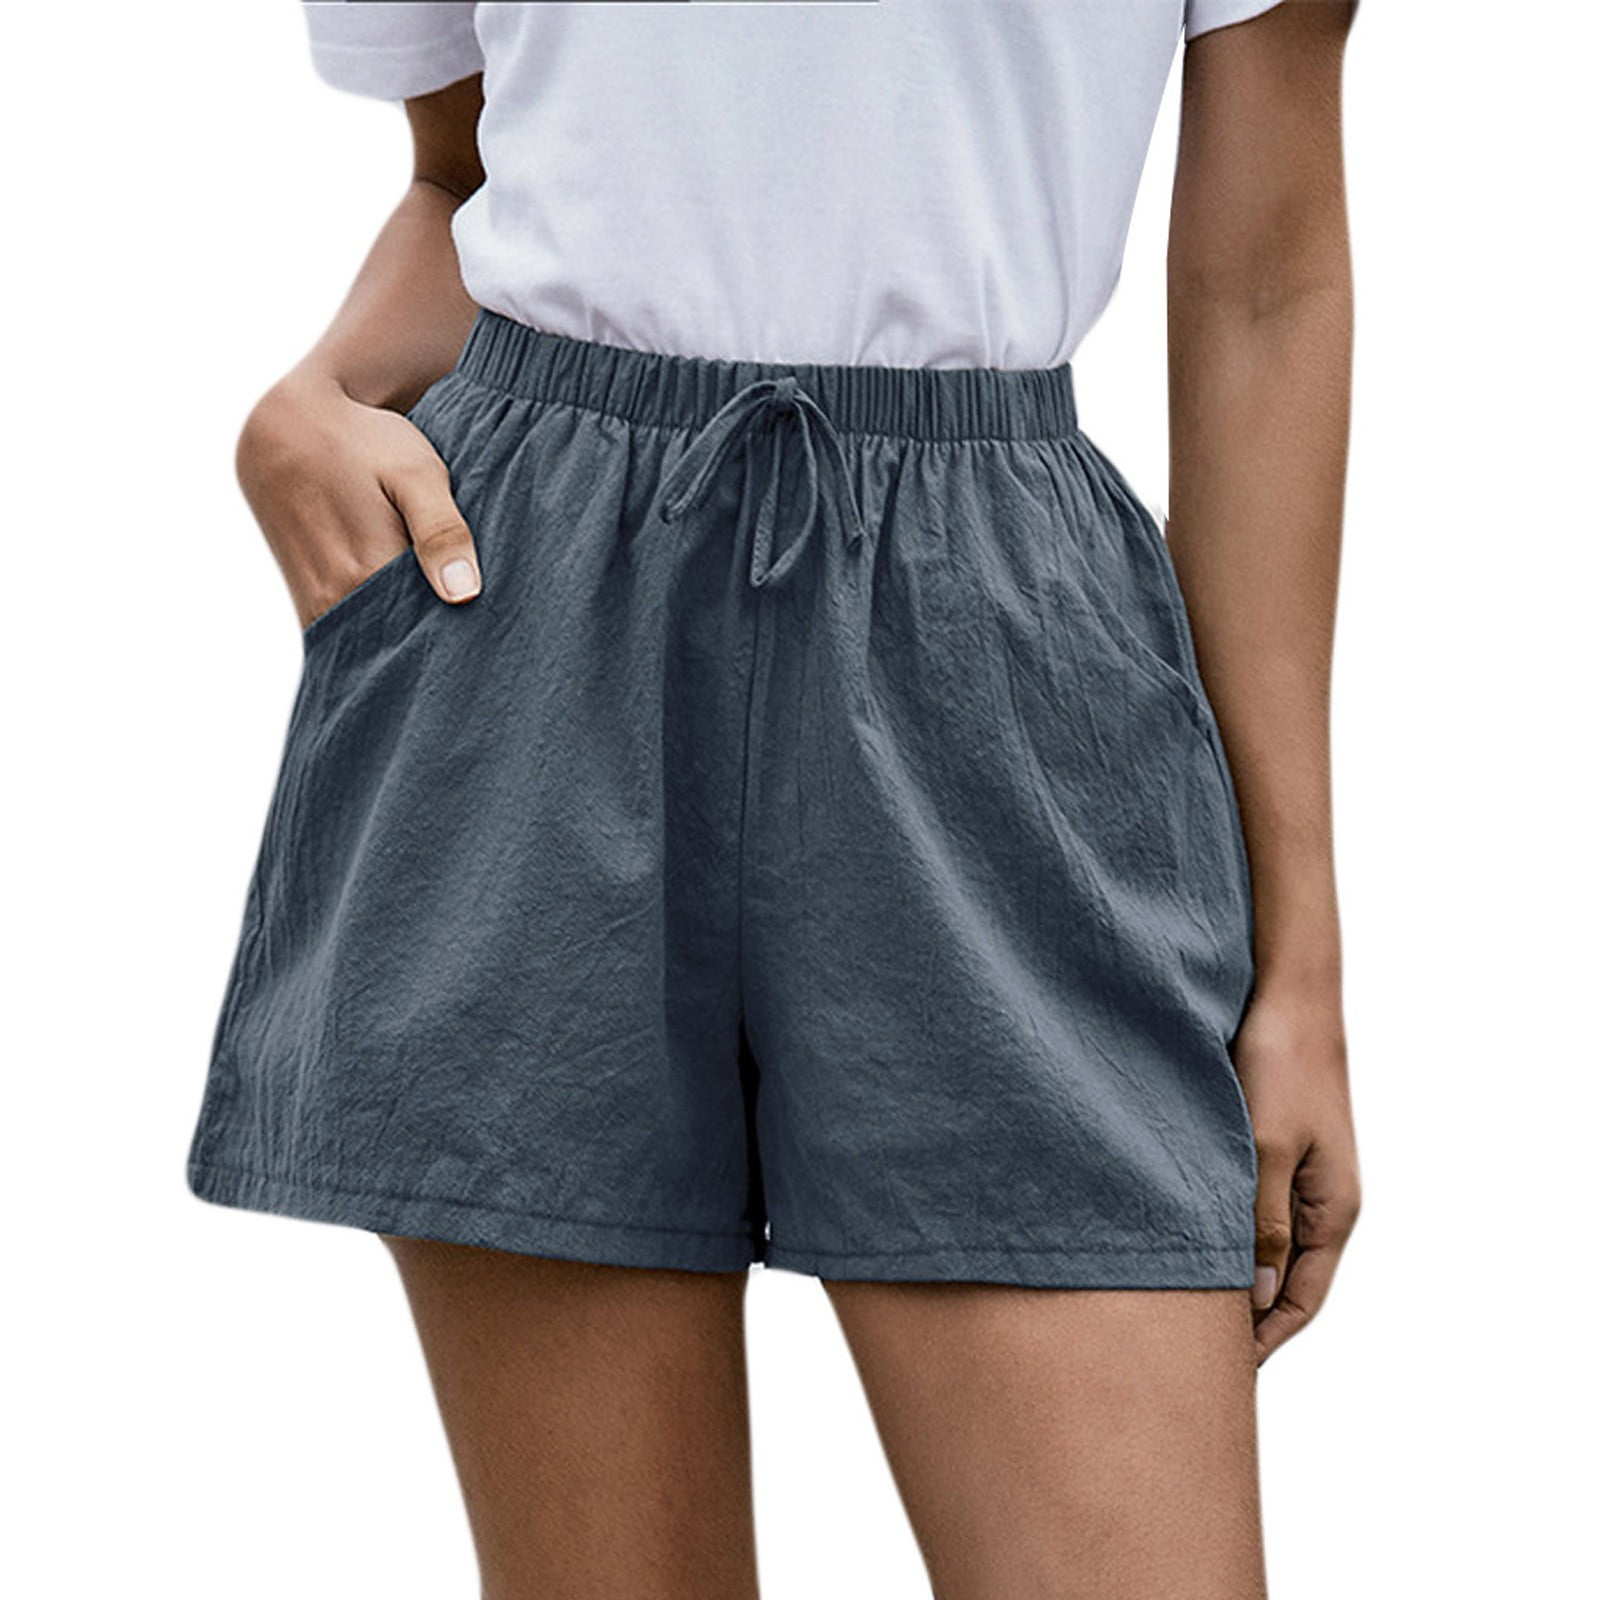 Wide Leg Shorts for Women High Waist Drawstring Cotton Linen Shorts ...